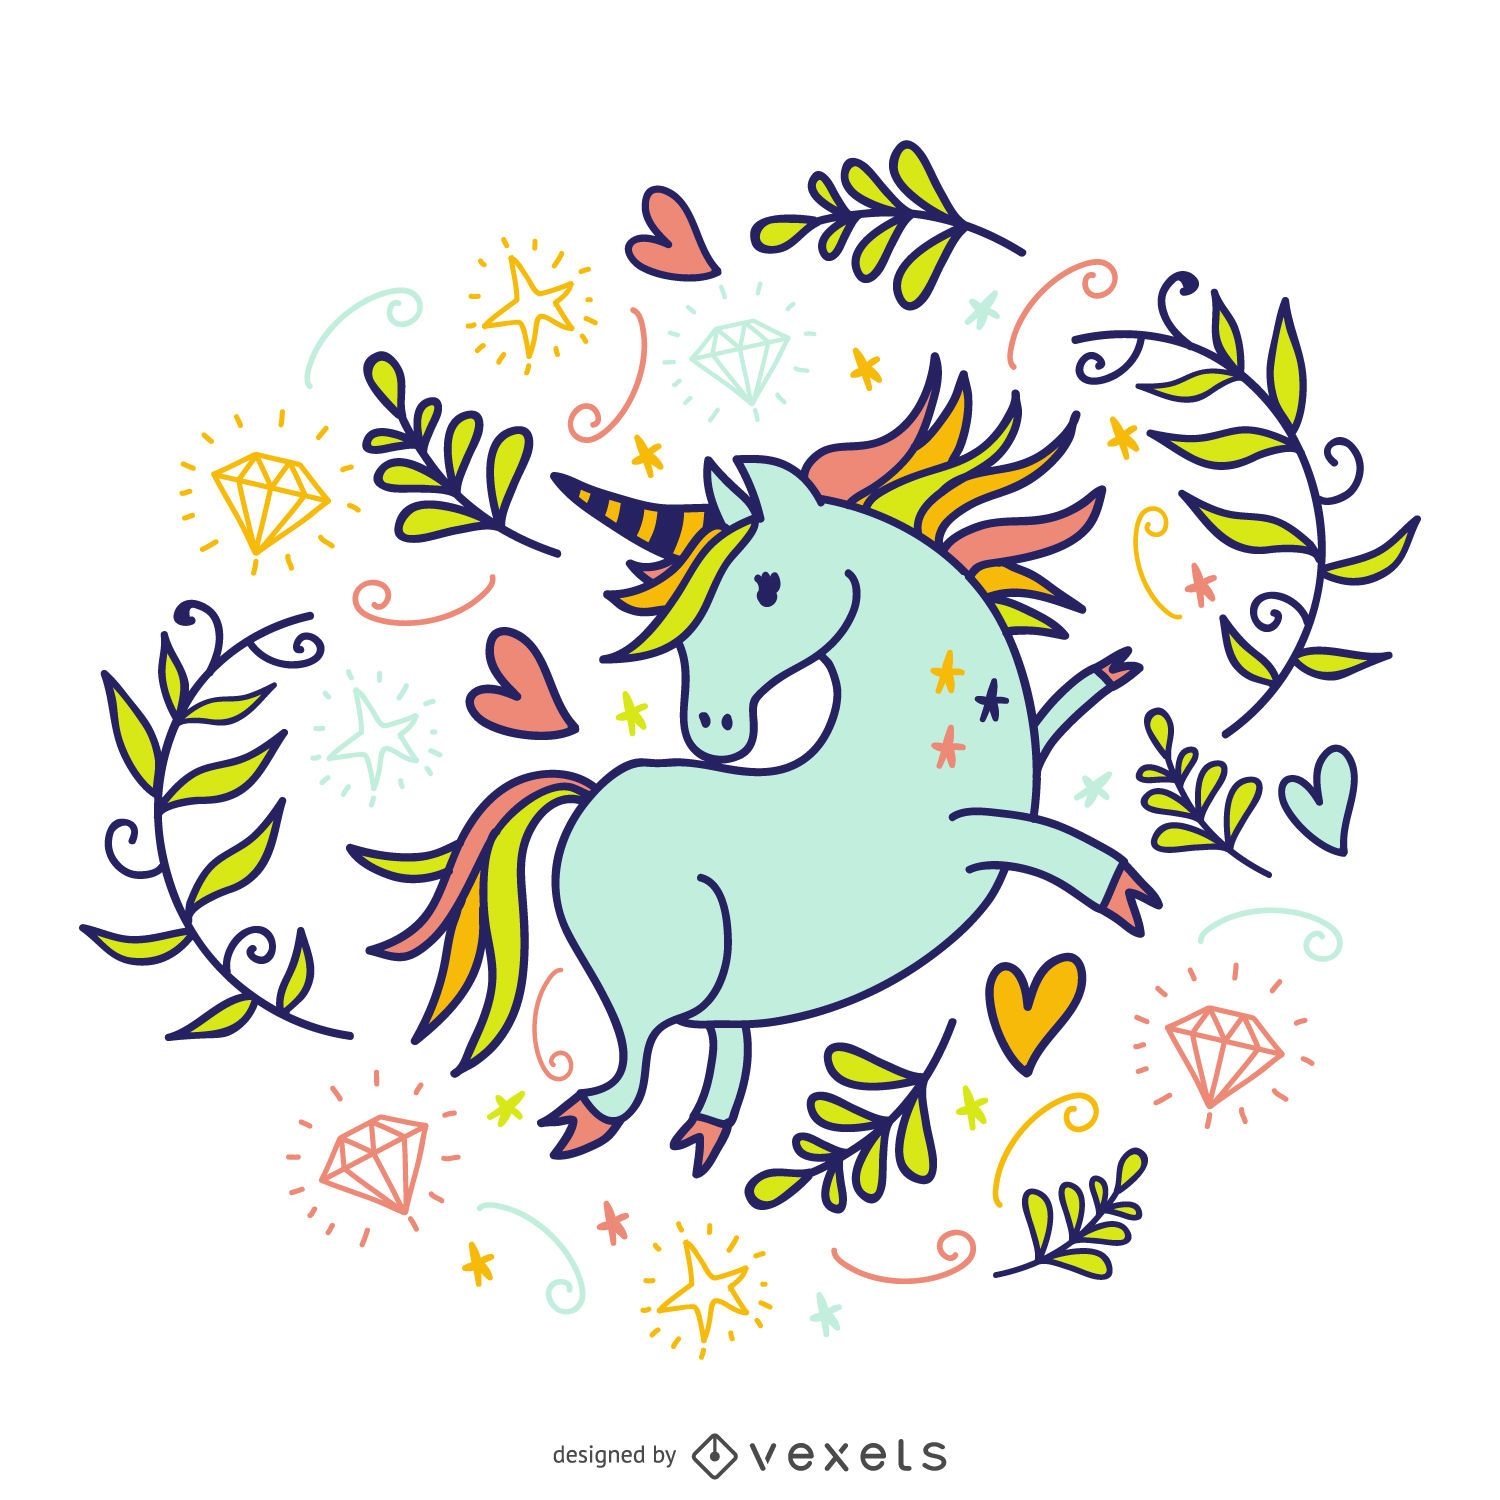 Doodled unicorn with elements